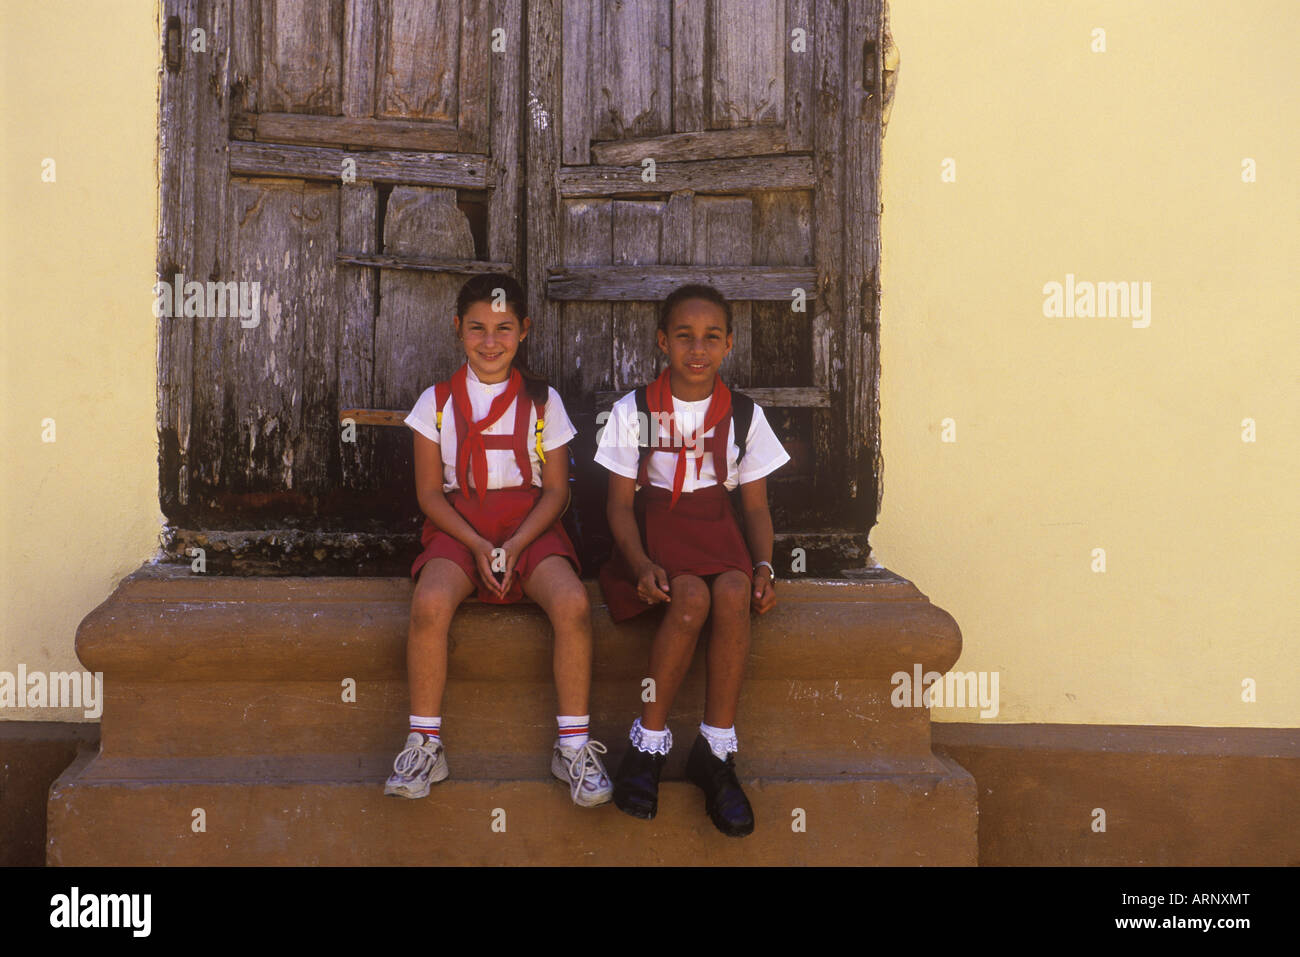 Cuba, Trinidad, deux filles de 10 ans, en uniforme d'asseoir sur des mesures pour chambre Banque D'Images